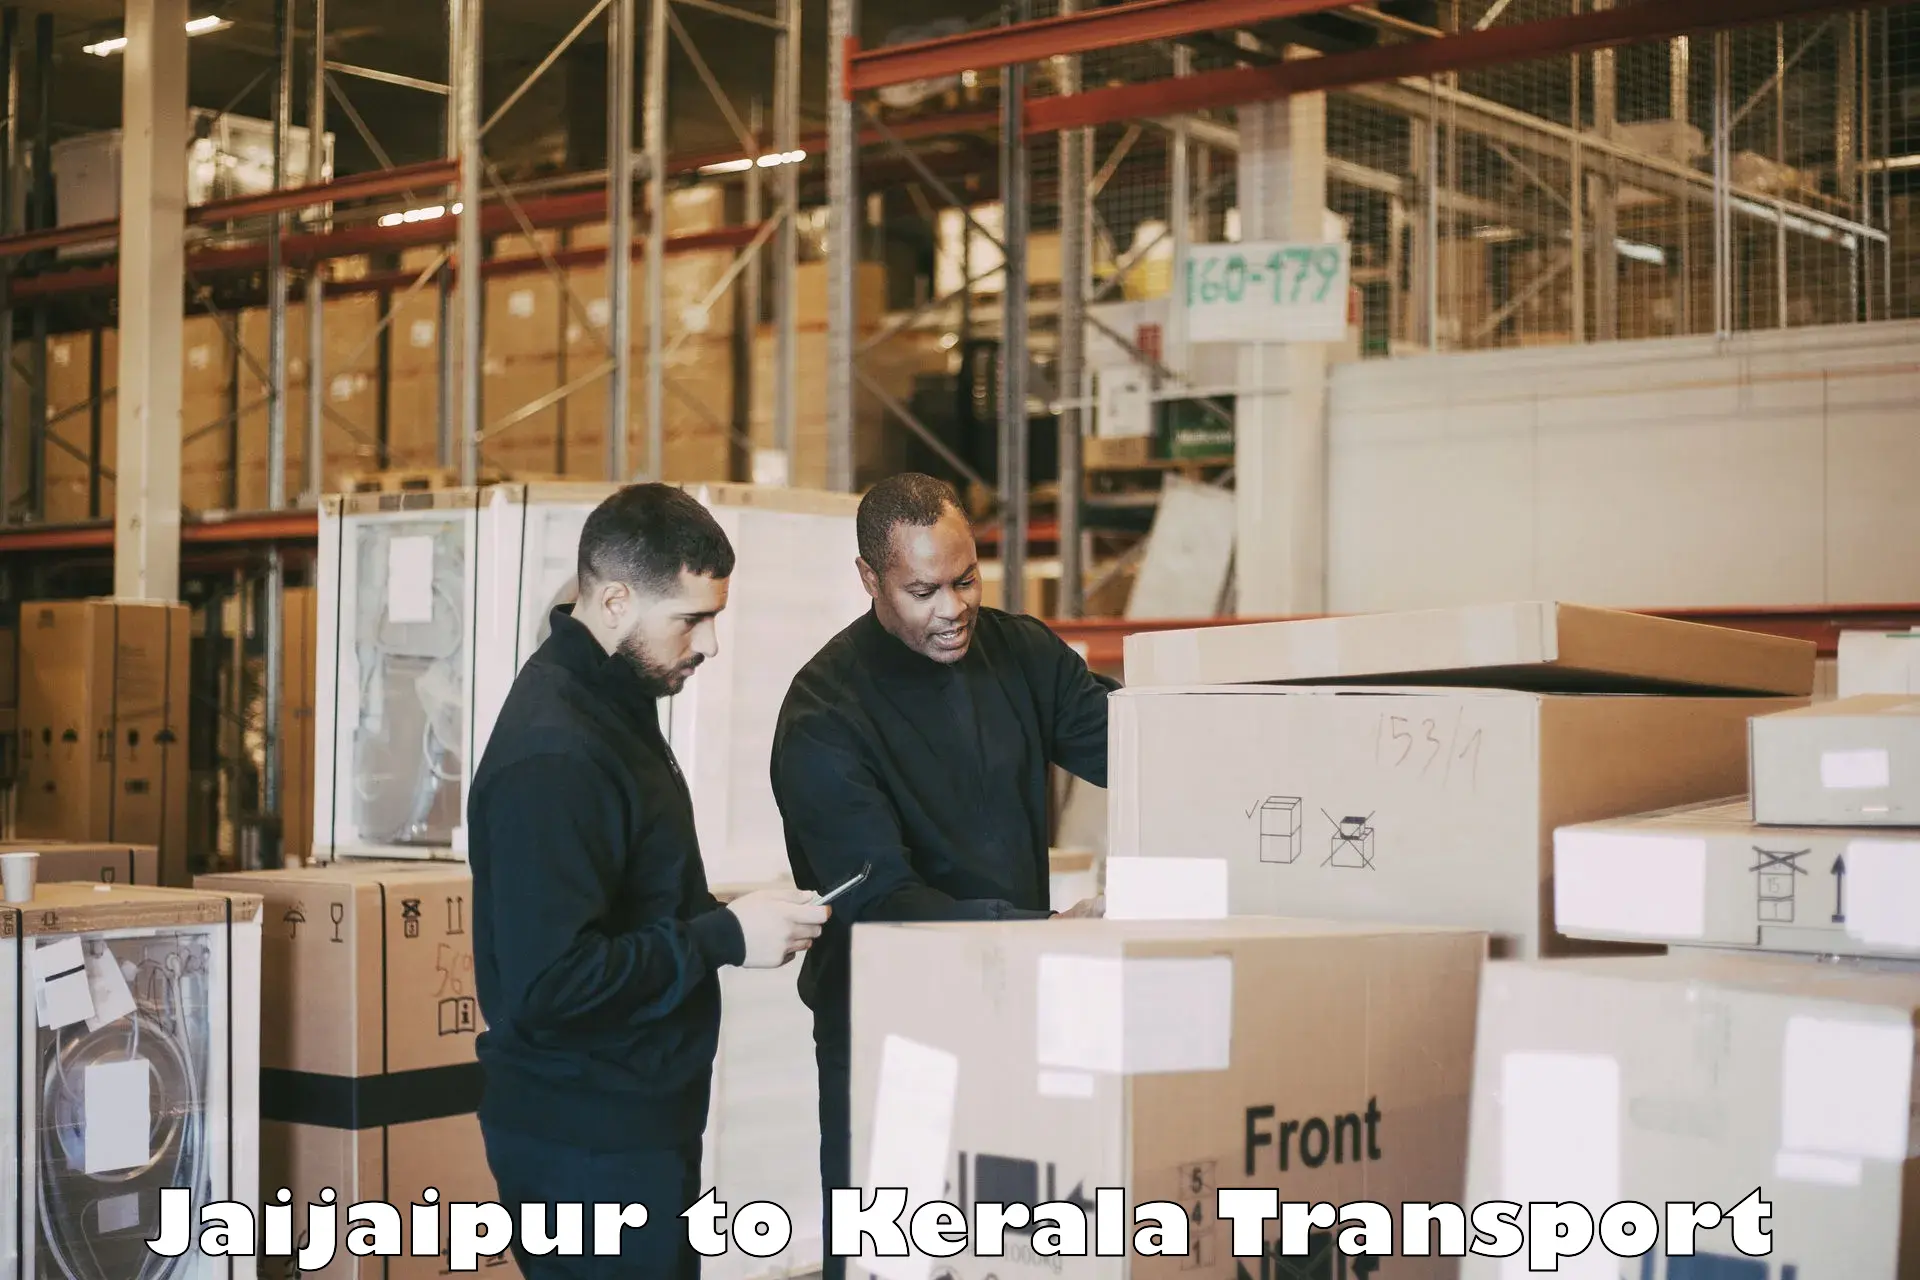 Furniture transport service Jaijaipur to Alappuzha